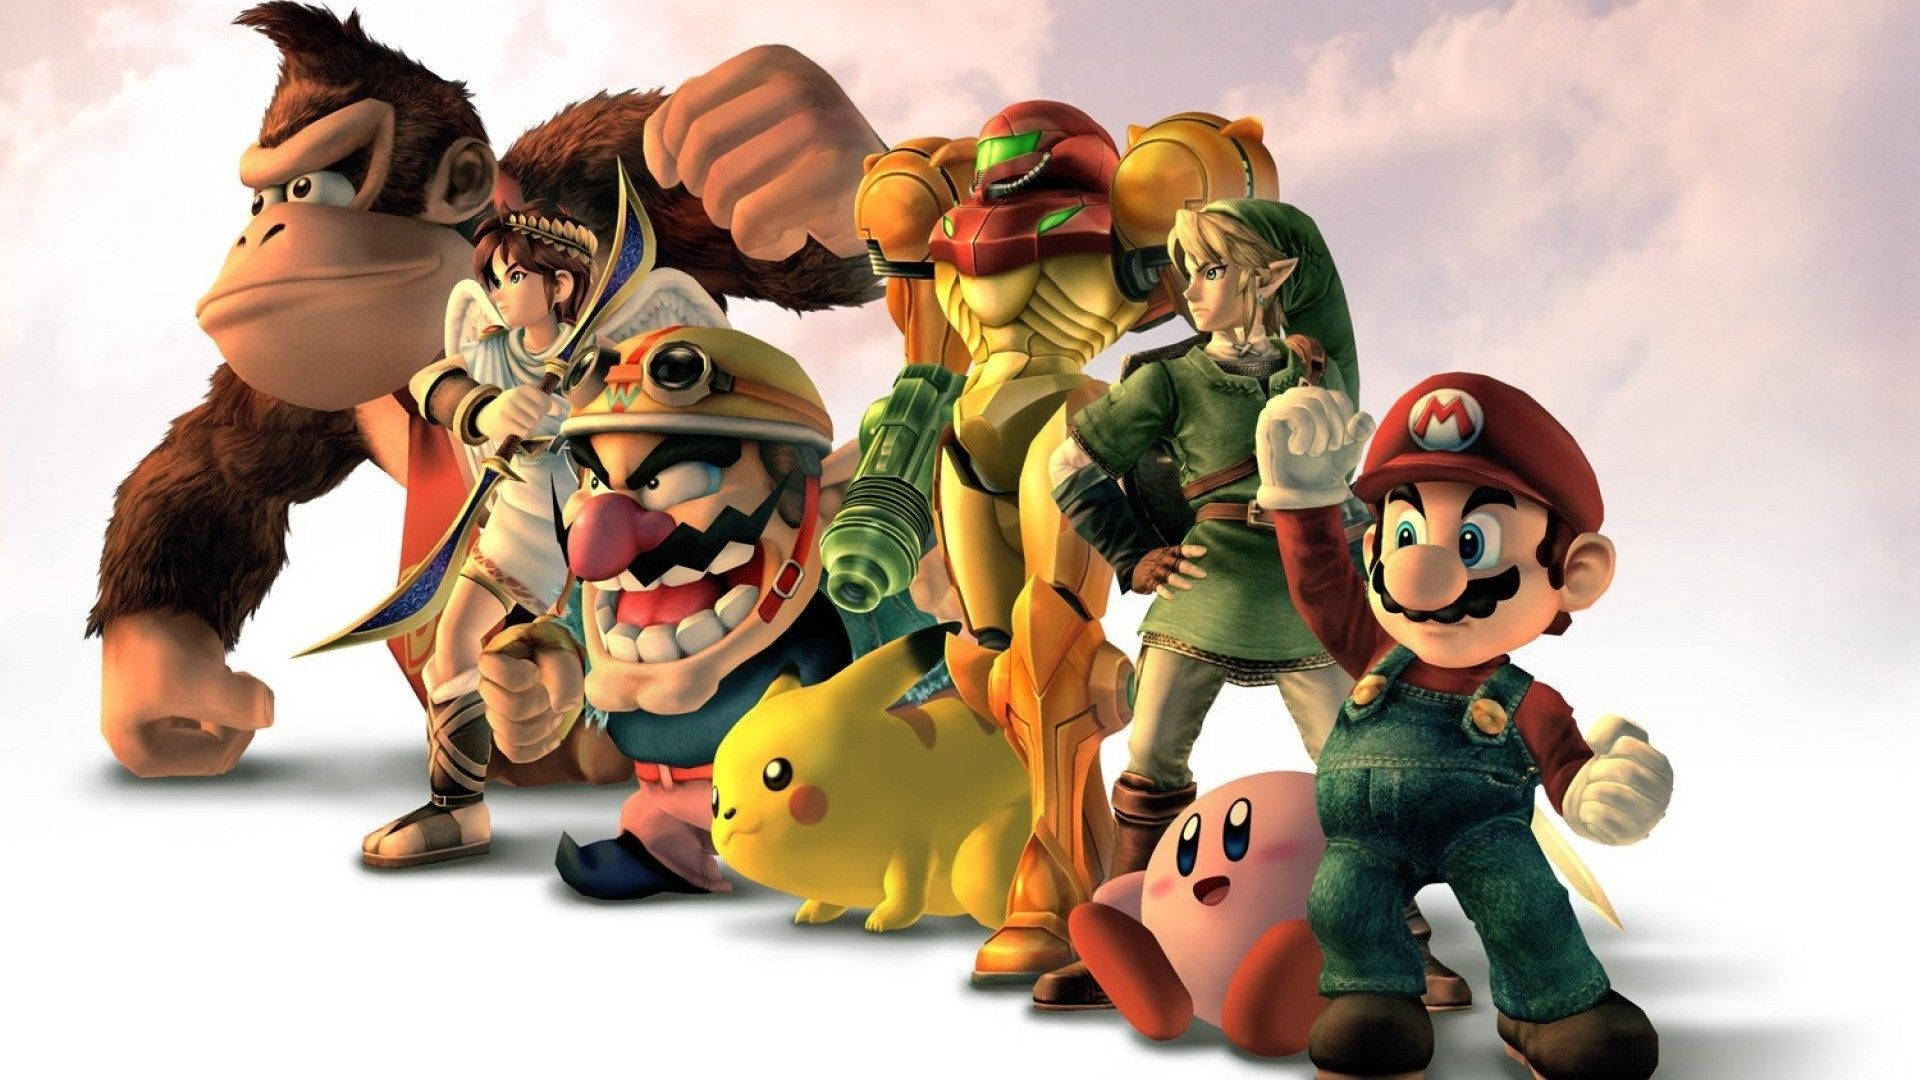 3D Nintendo popular hero characters wallpaper